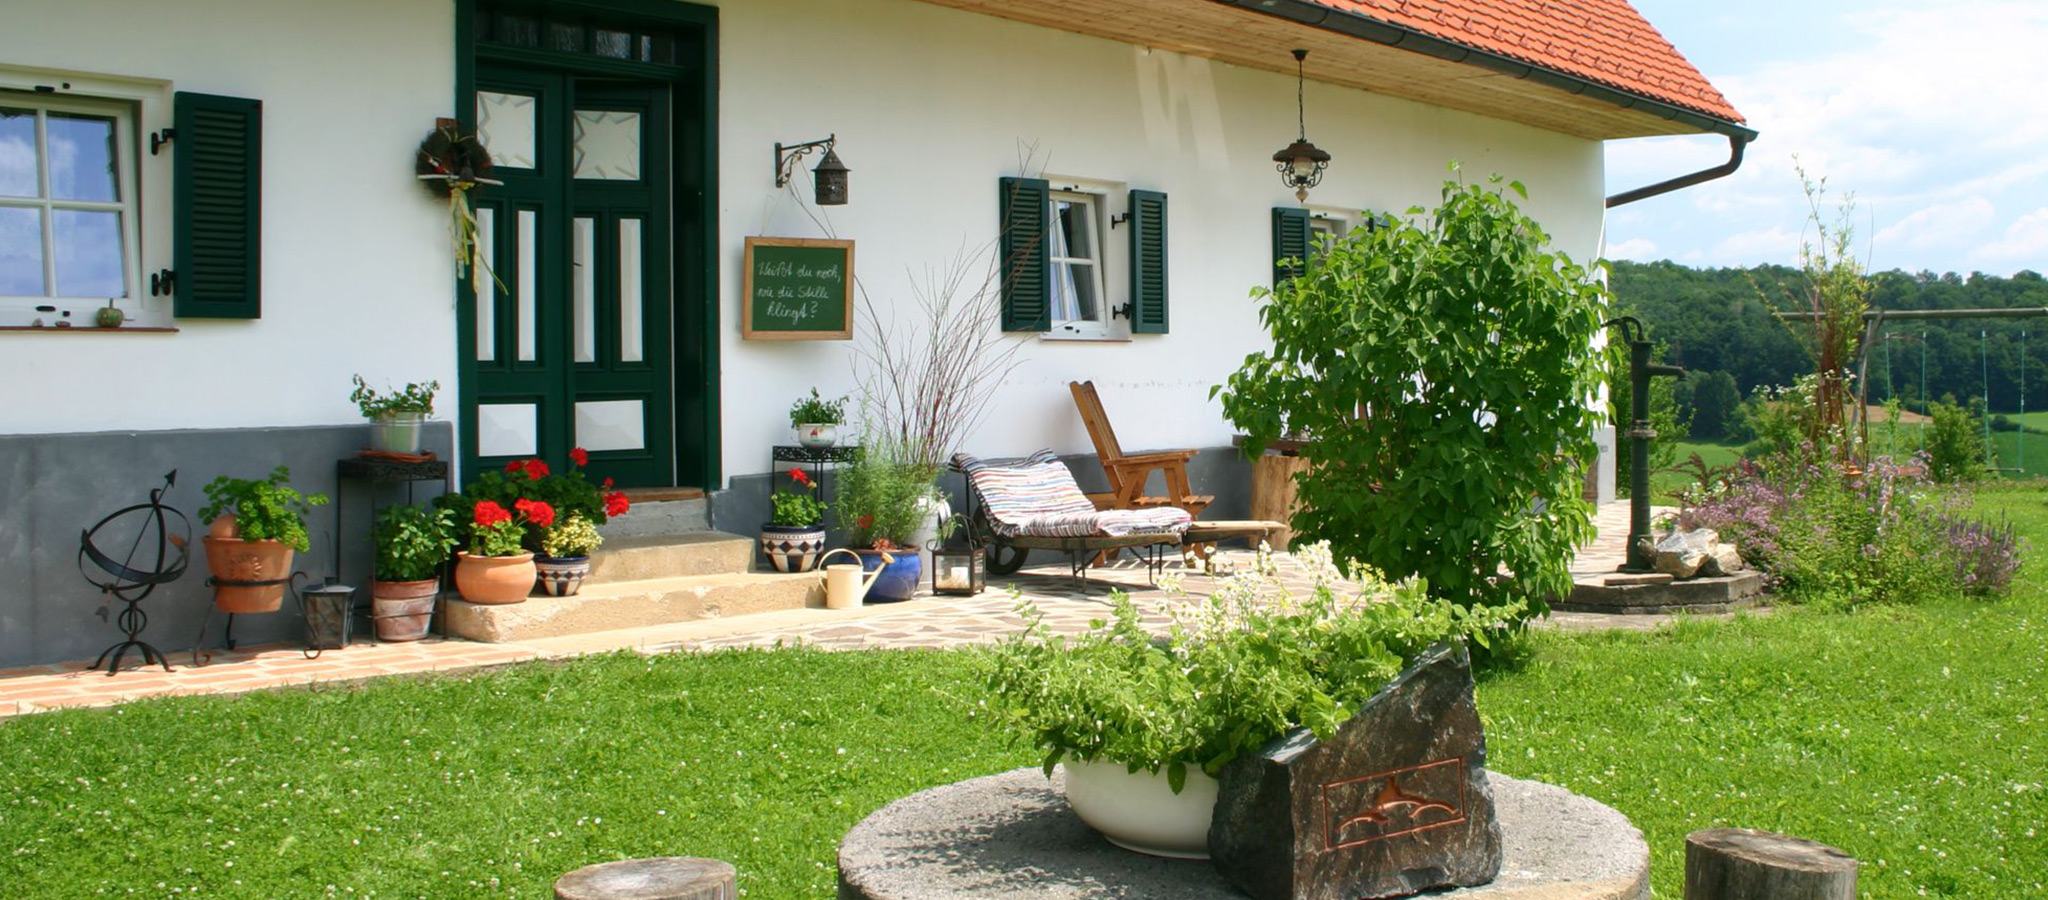 Ferienhaus nahe Riegersburg und Feldbach